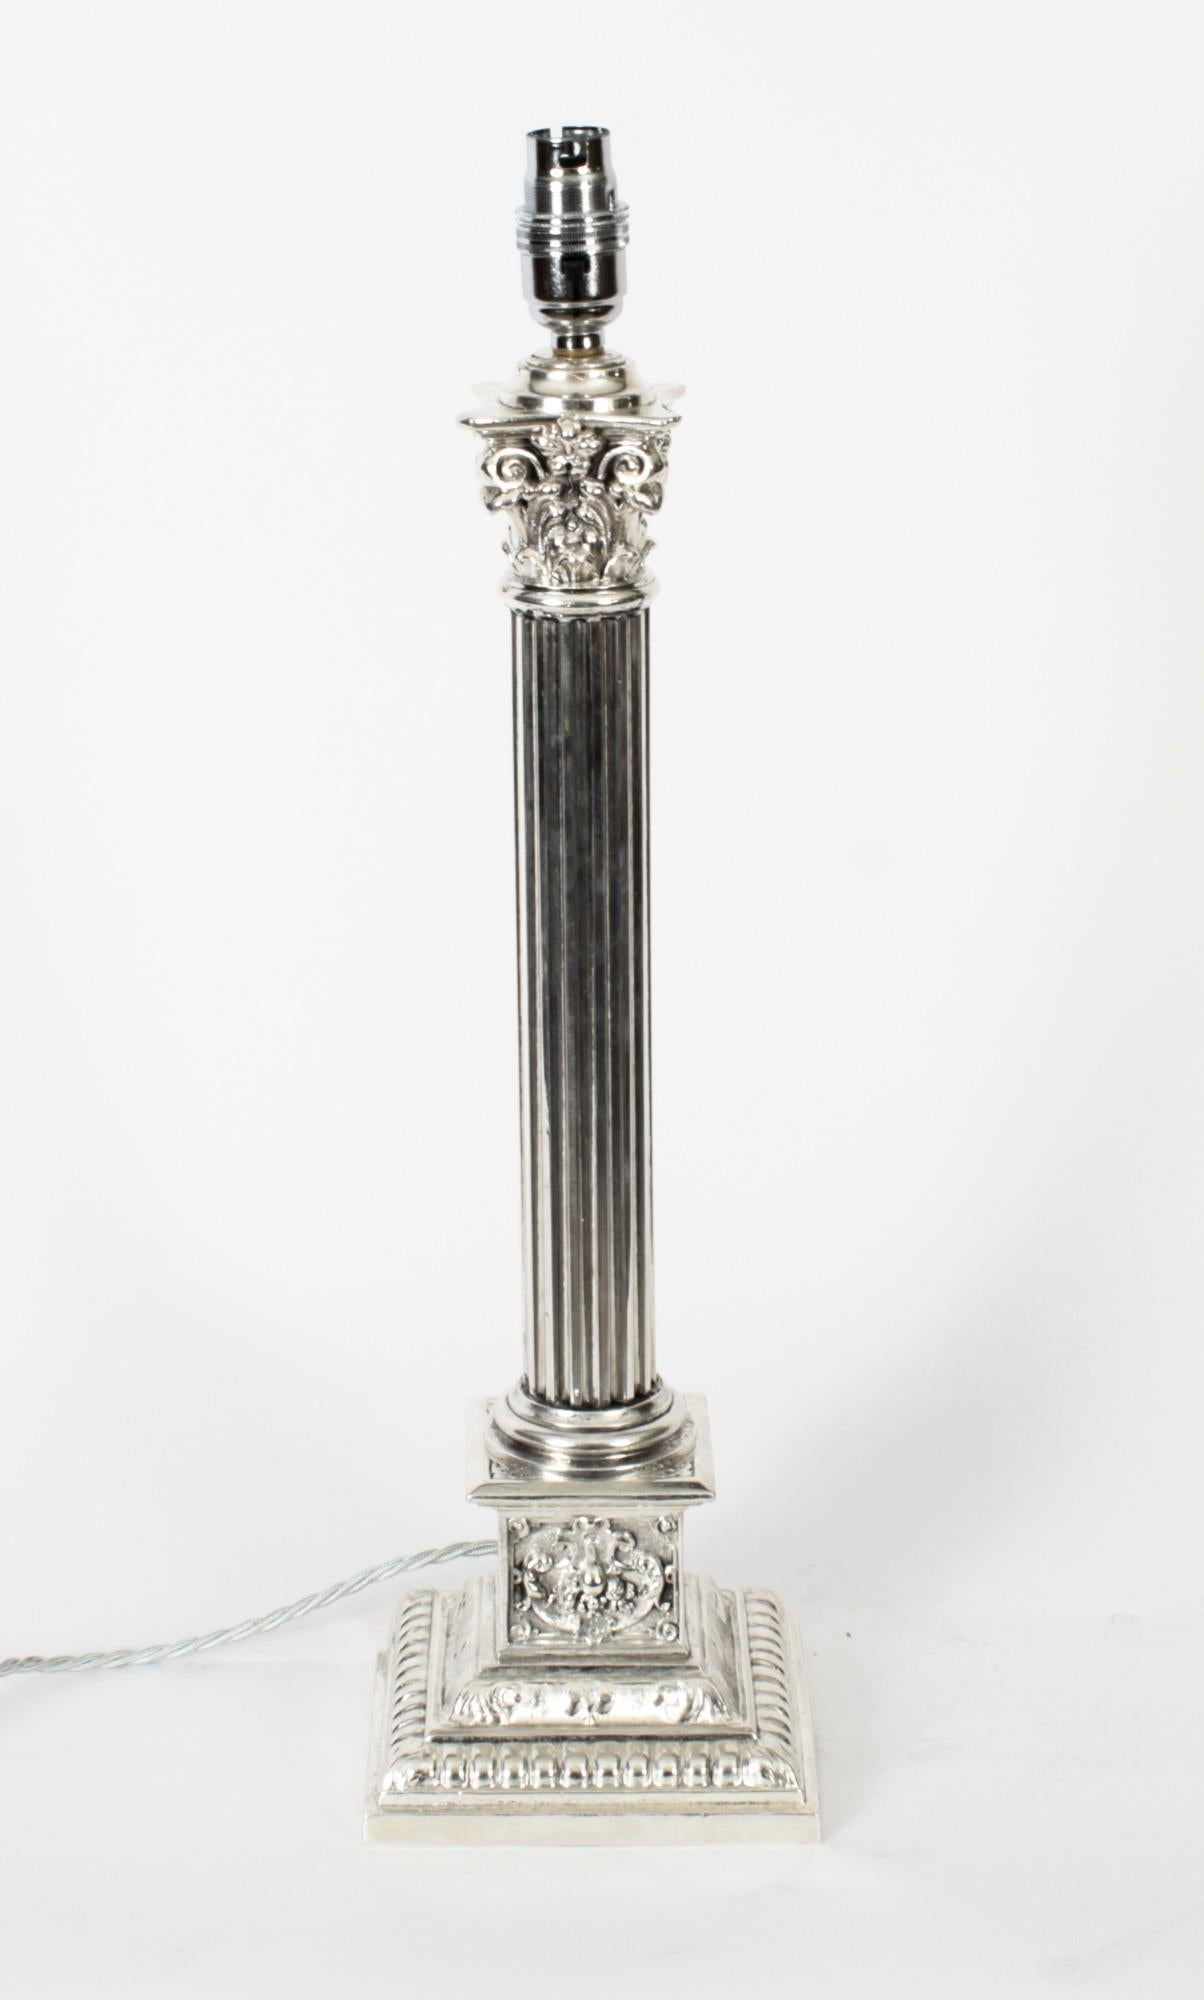 Il s'agit d'une splendide lampe de table victorienne ancienne à colonne corinthienne en métal argenté maintenant convertie à l'électricité, datant de la fin du 19e siècle.
 
Cette opulente lampe de table antique présente un chapiteau corinthien